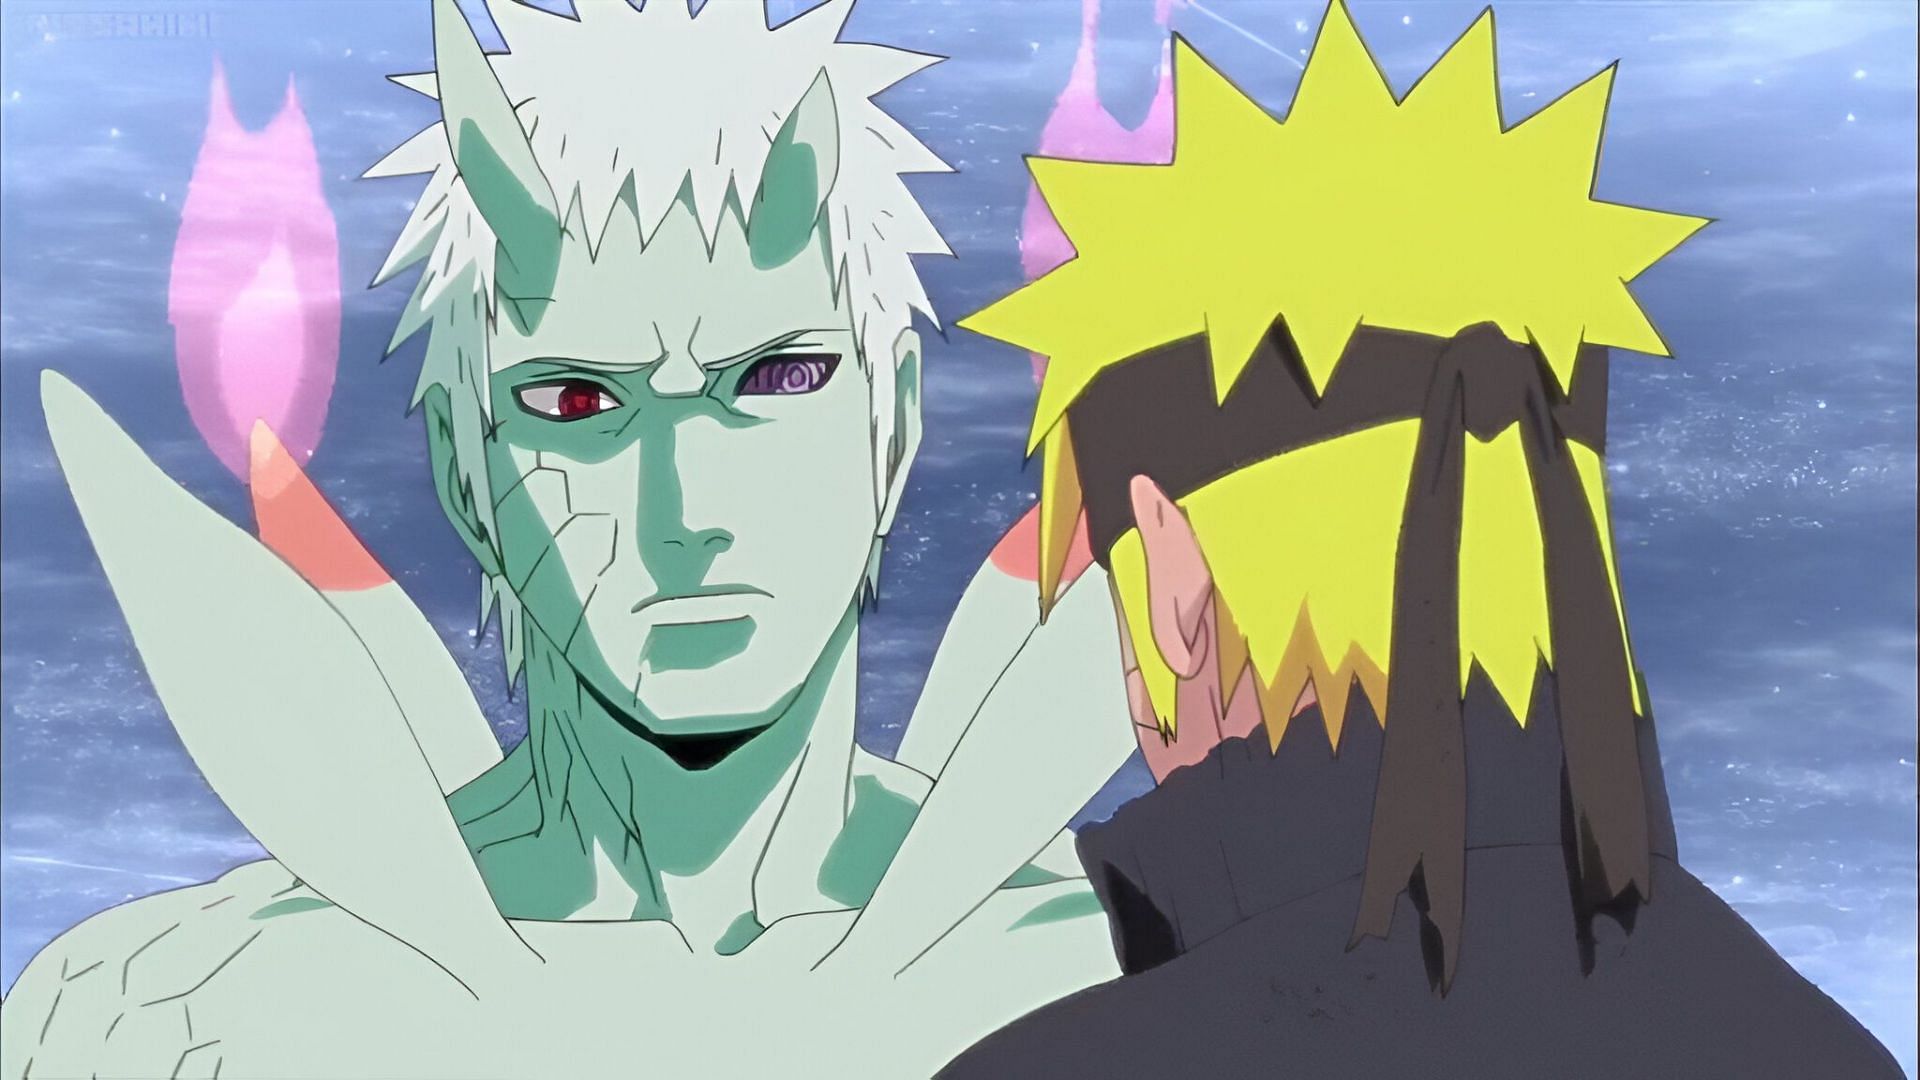 Obito Uchiha and Naruto as seen in Naruto Shippuden (Image via Studio Pierrot)